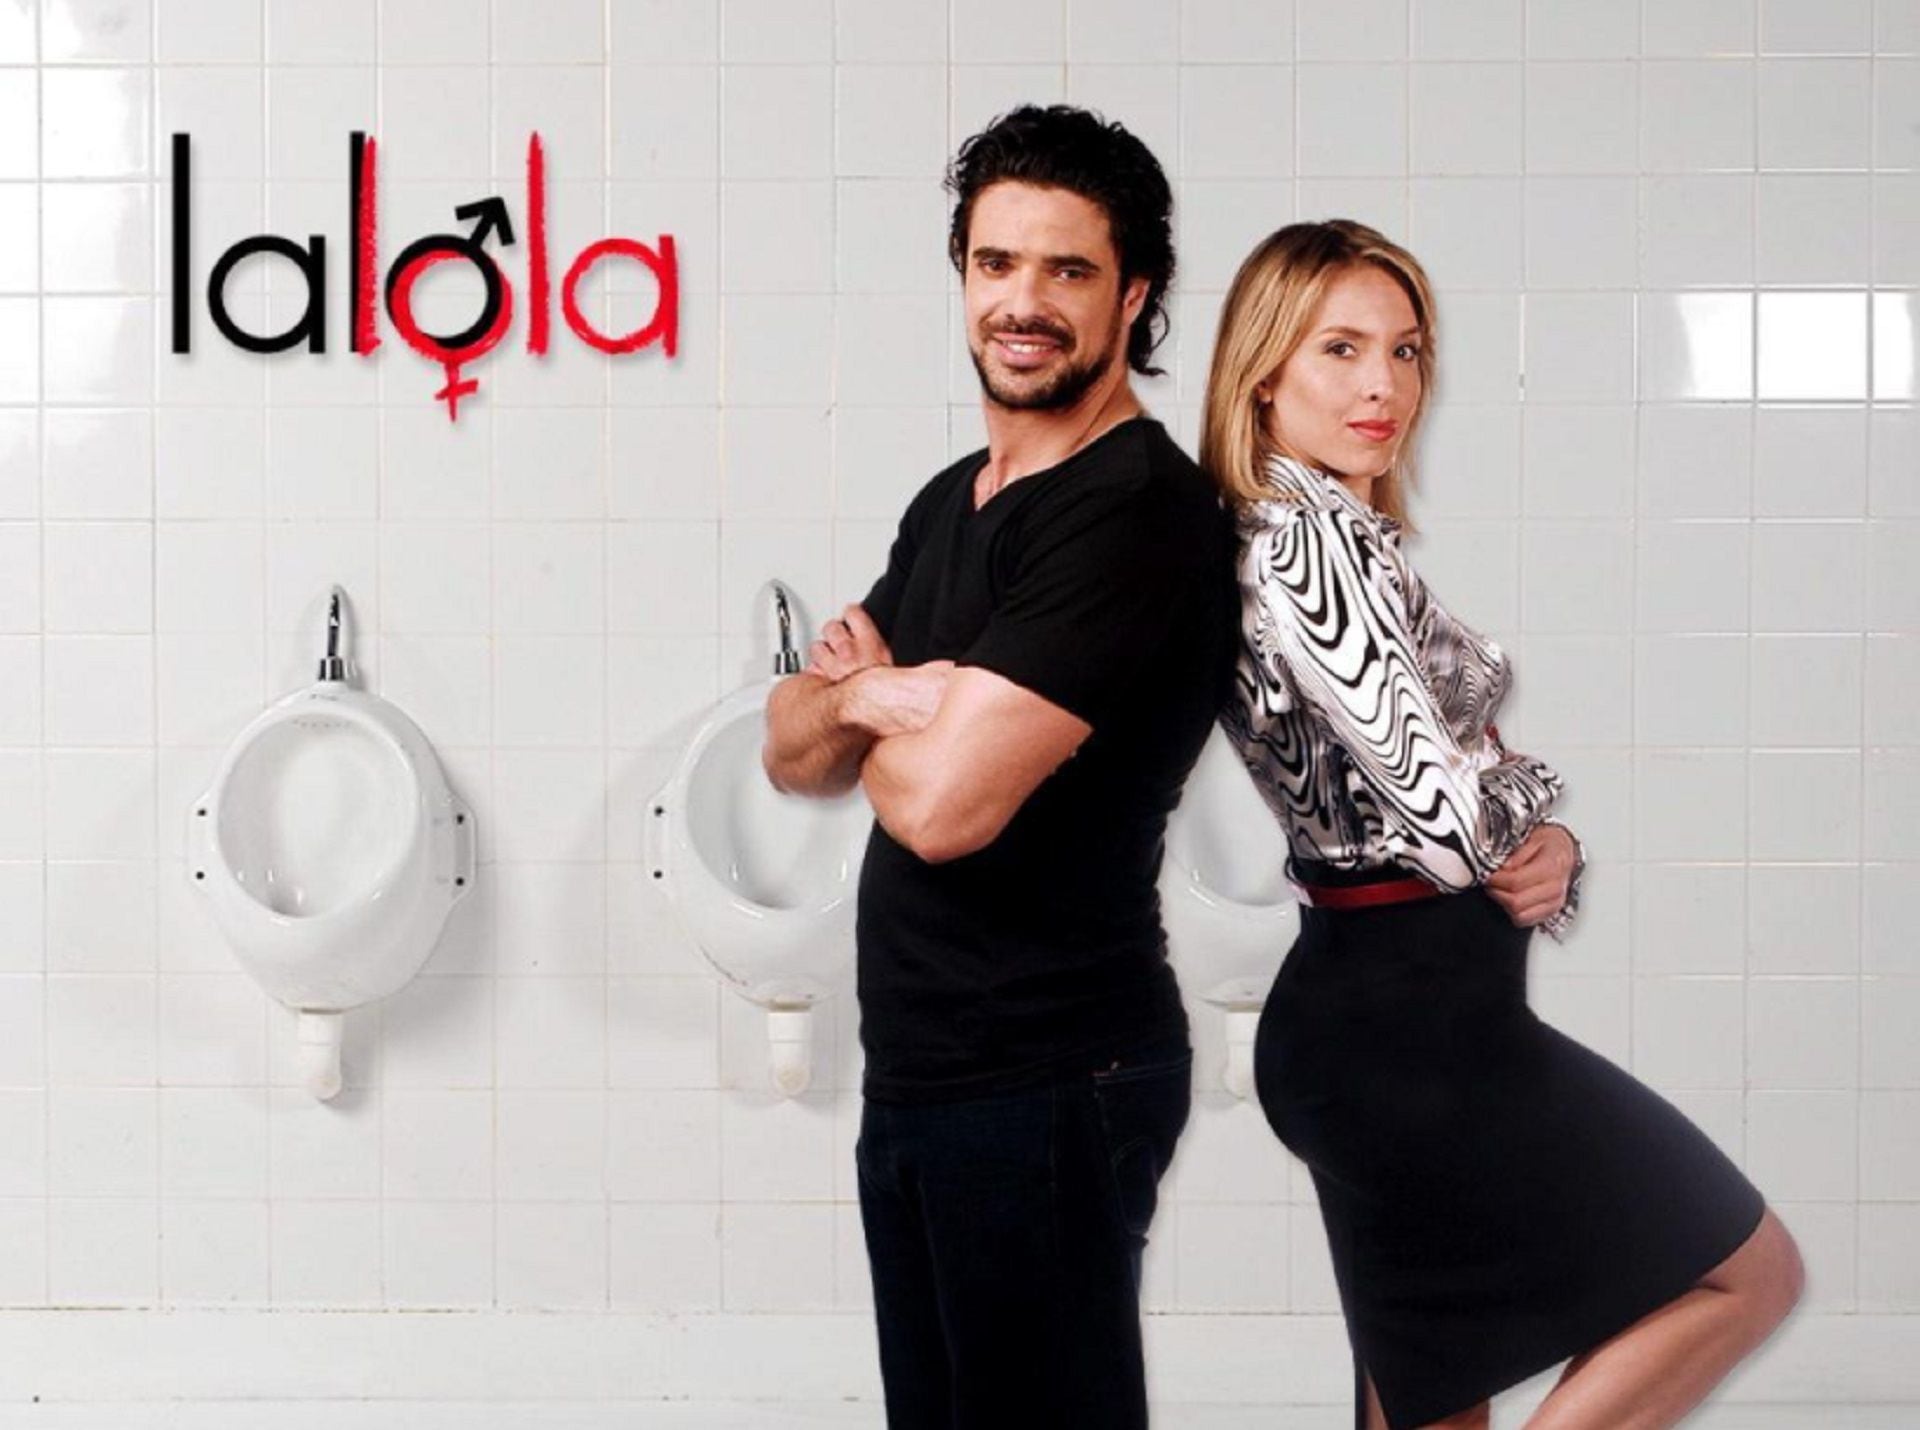 Junto a Luciano Castro protagonizó "Lalola", la telecomedia argentina que la catapultó a la fama